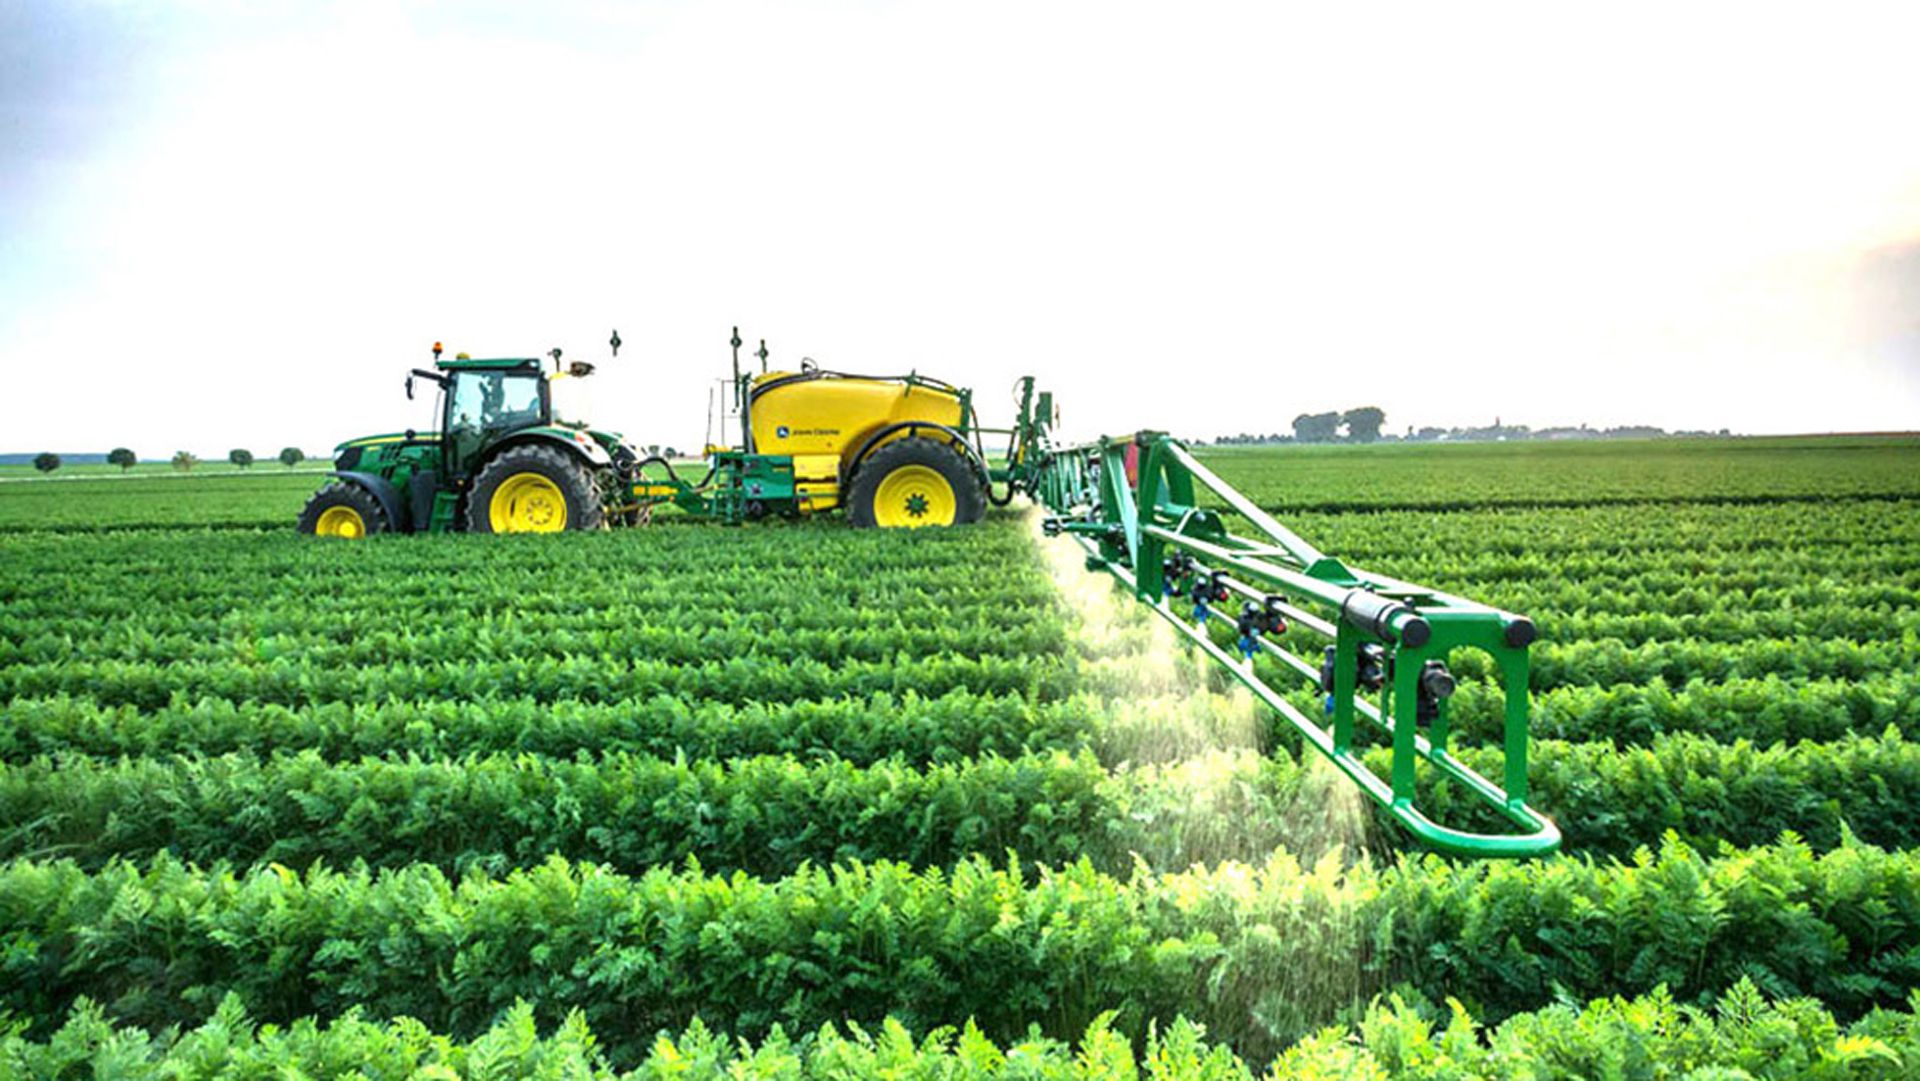 El gobierno bonaerense promoverá “políticas públicas” en materia de aplicaciones de agroquímicos. Así lo aseguró el titular de la cartera agropecuaria provincial, Javier Rodríguez